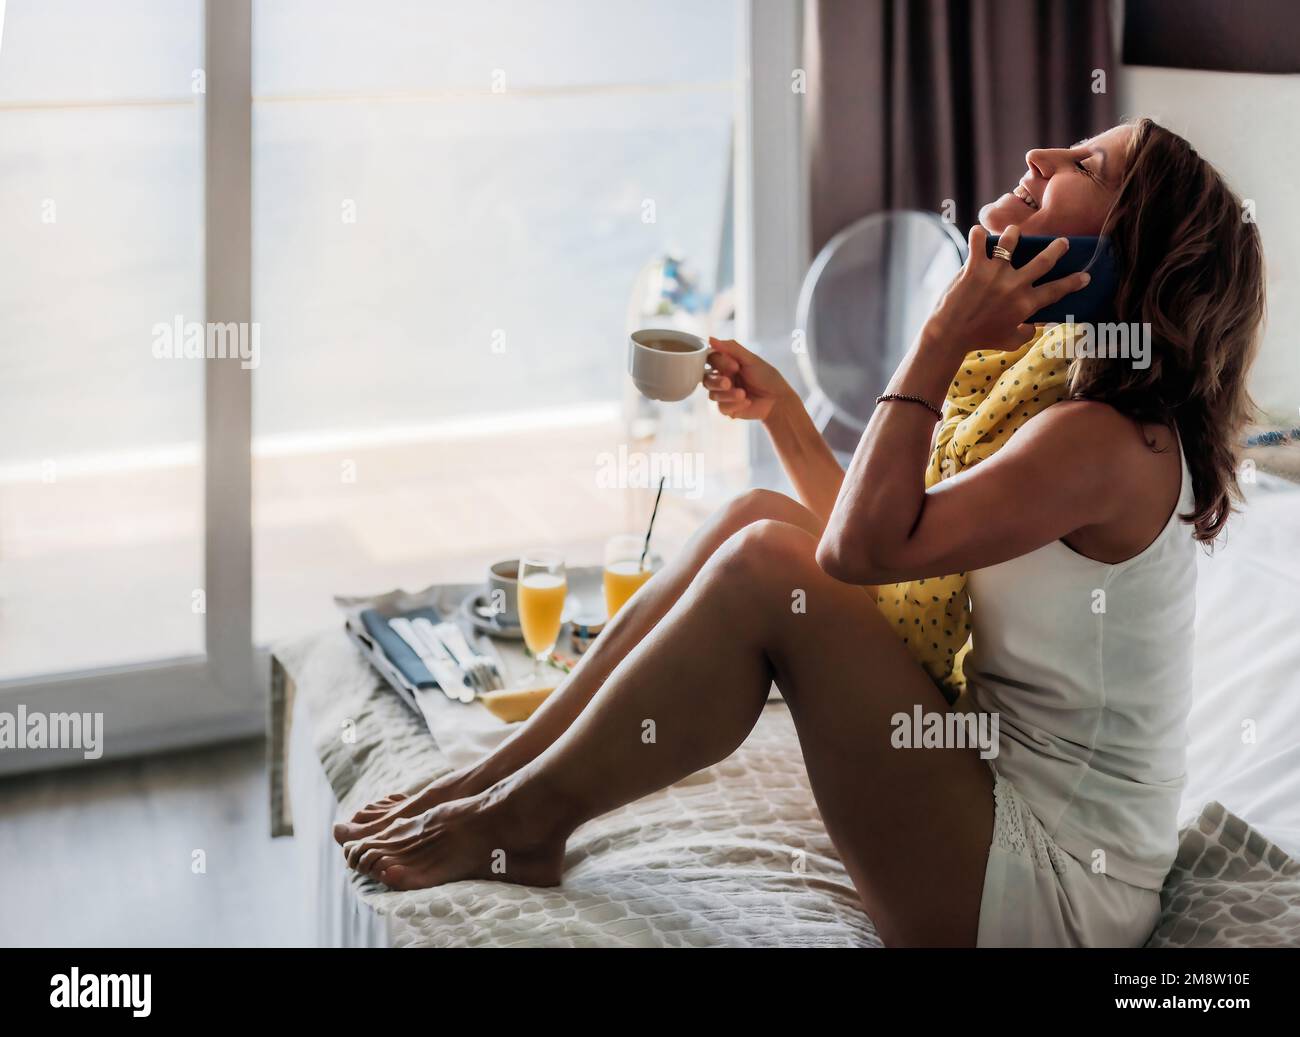 Eine weiße Frau mittleren Alters spricht am Telefon und lächelt, während sie auf einem Hotelbett frühstückt und eine Tasse Kaffee in der Hand hält. Tageslicht. Stockfoto